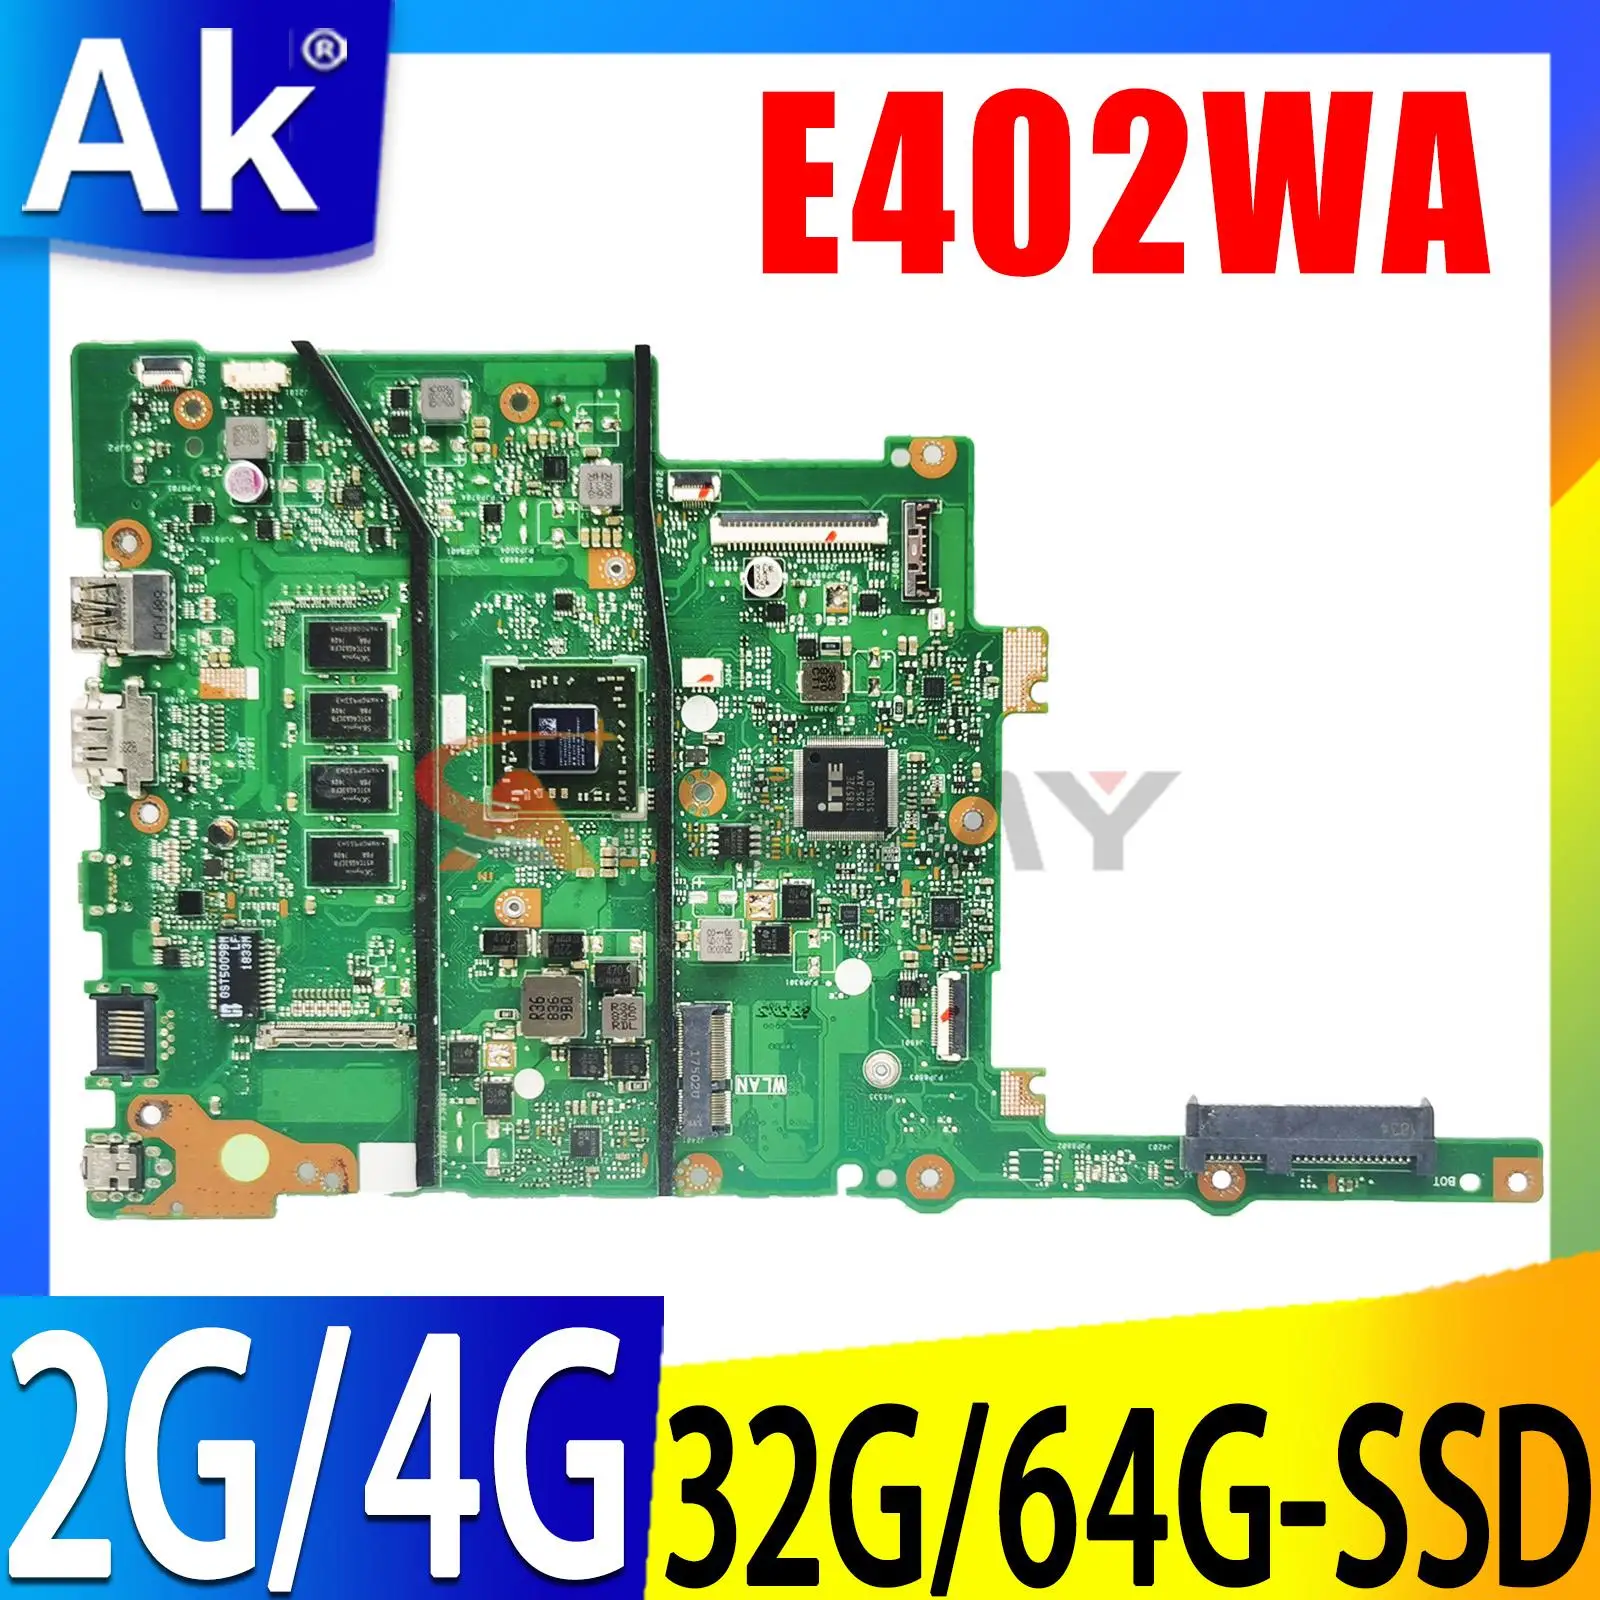 

E402WA Laptop Motherboard E2-6110 CPU 2GB 4GB RAM for ASUS VivoBook E402WAS E402WA E402YA E402W Notebook Mainboard 100% Work